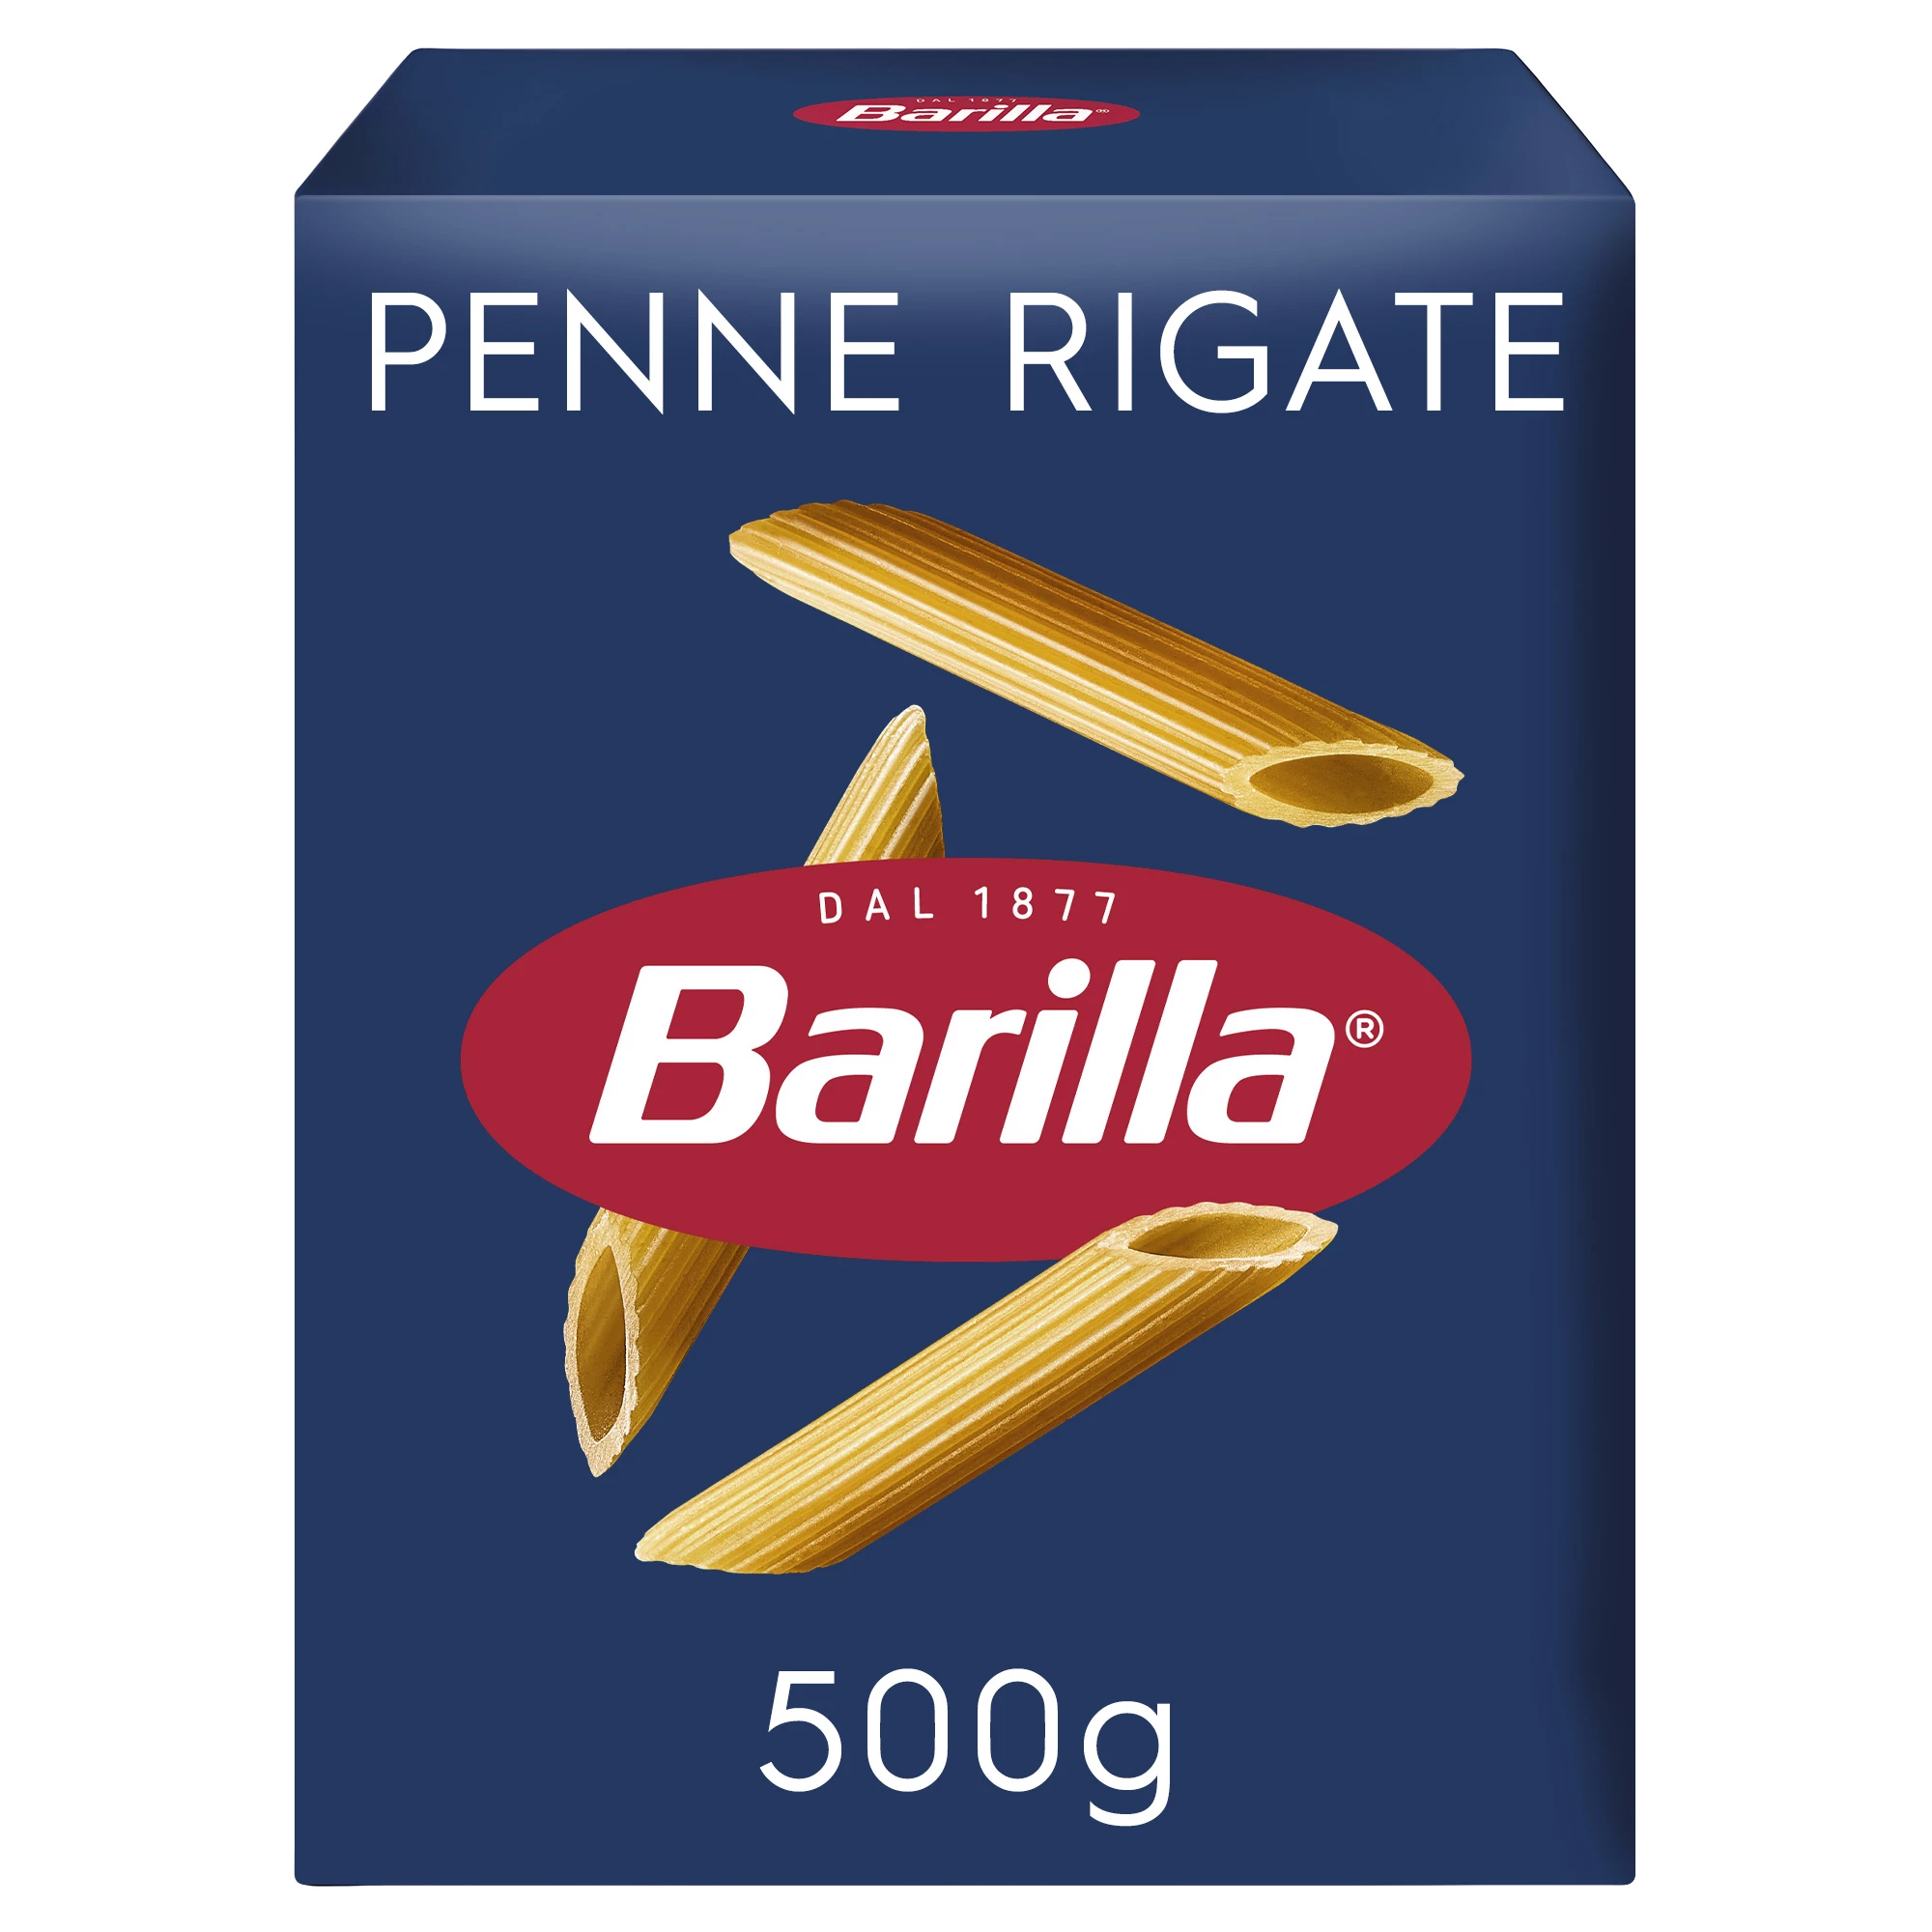 Pasta Penne Rigate, 500g - BARILLA